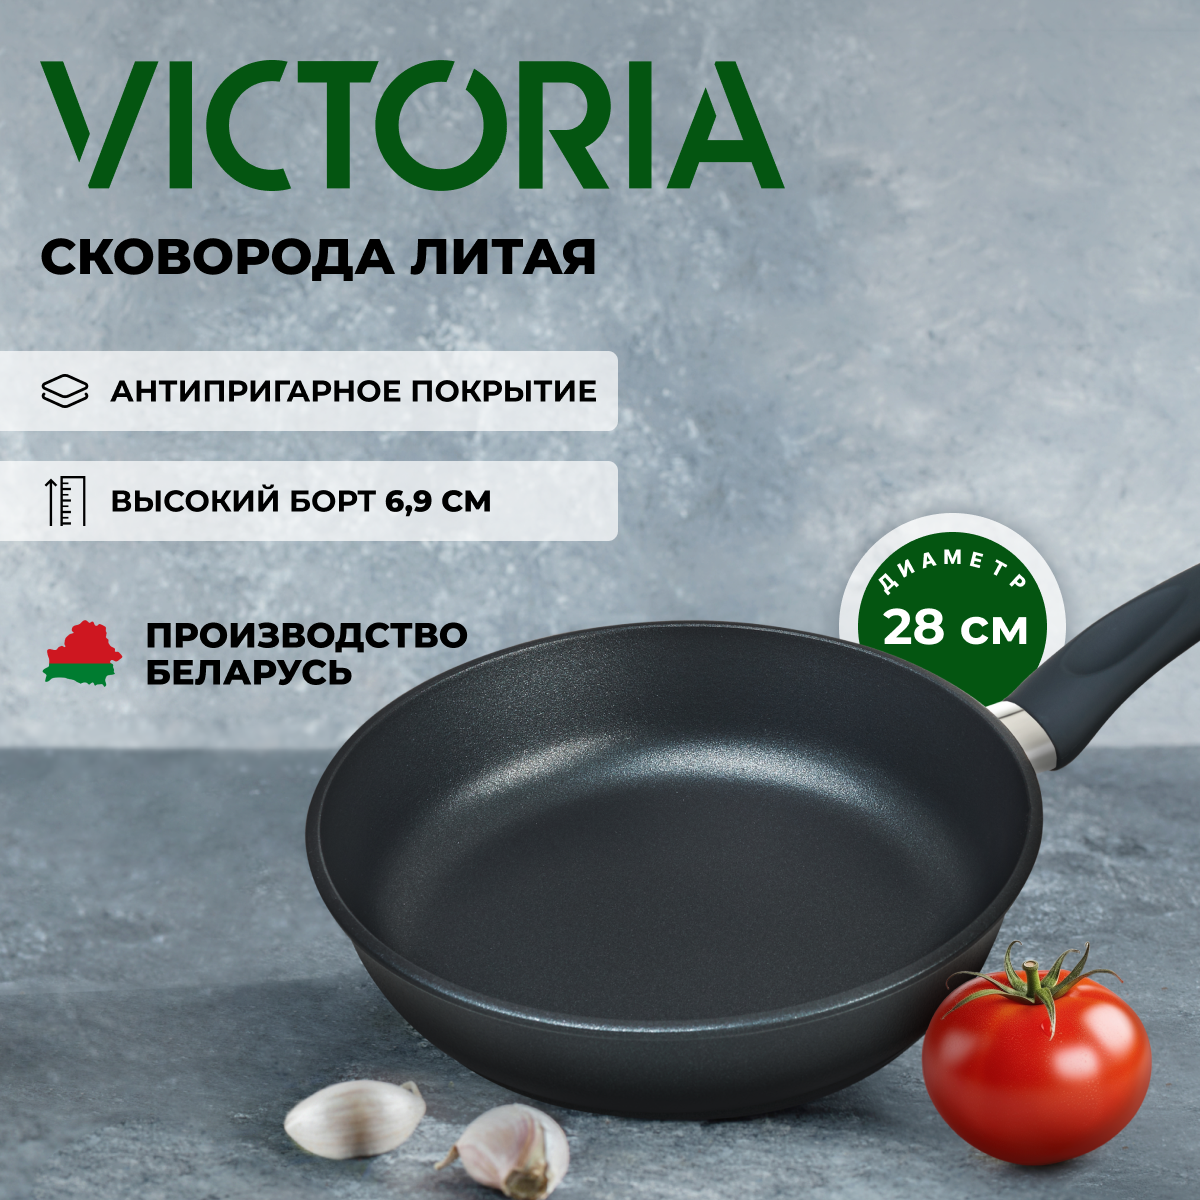 Сковорода универсальная Victoria Престиж 28 см черный P0028